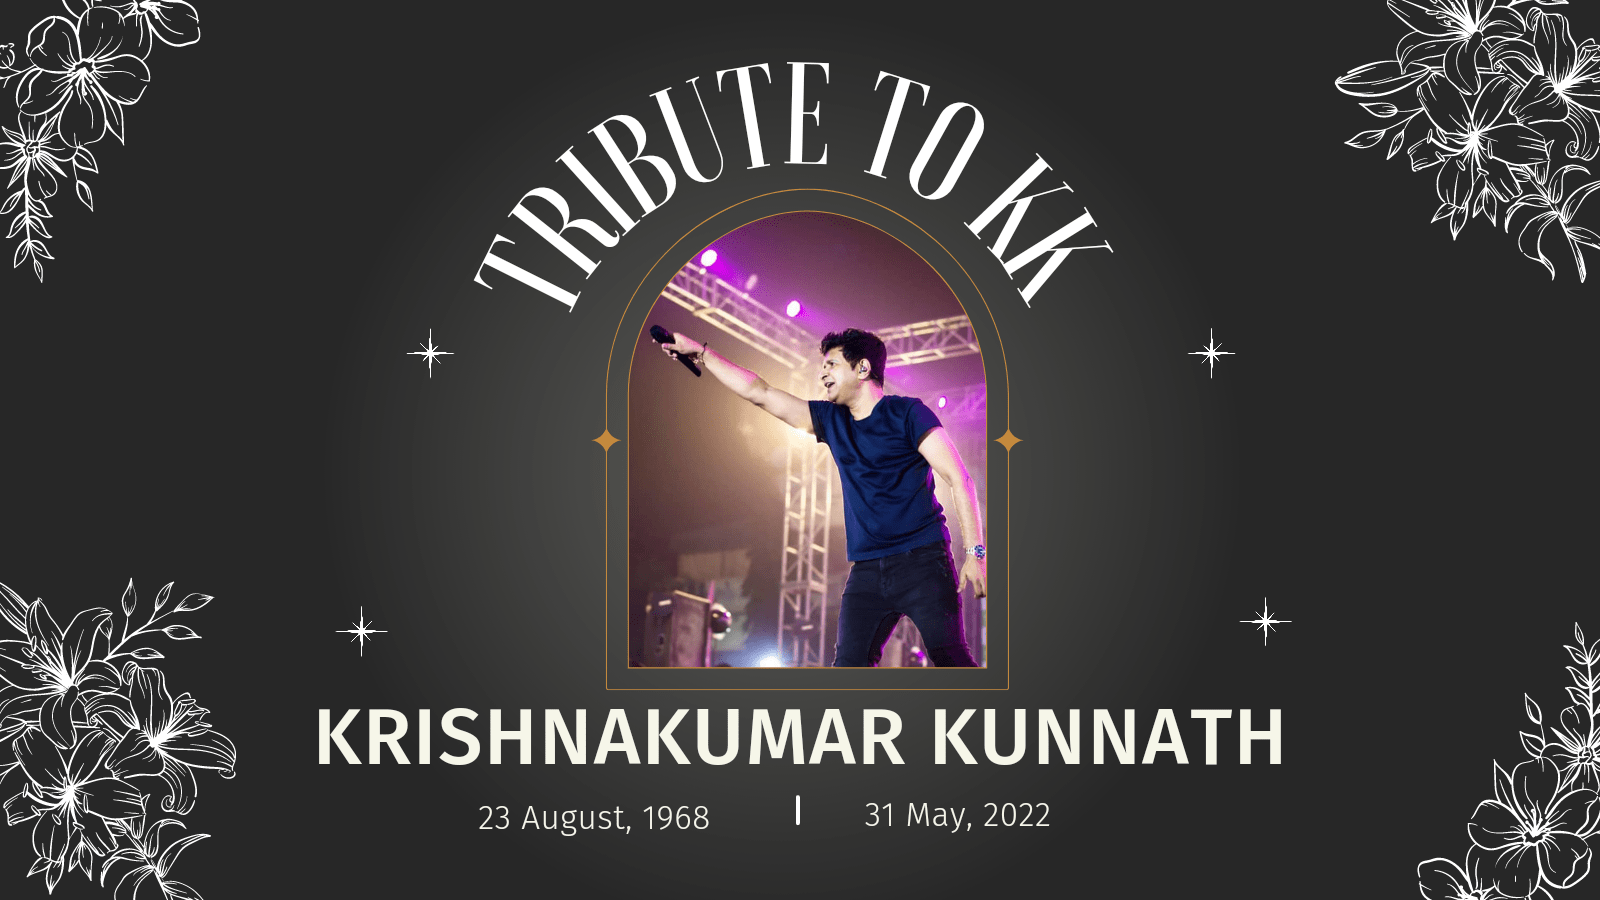 KK (Krishnakumar Kunnath) 1968-2022